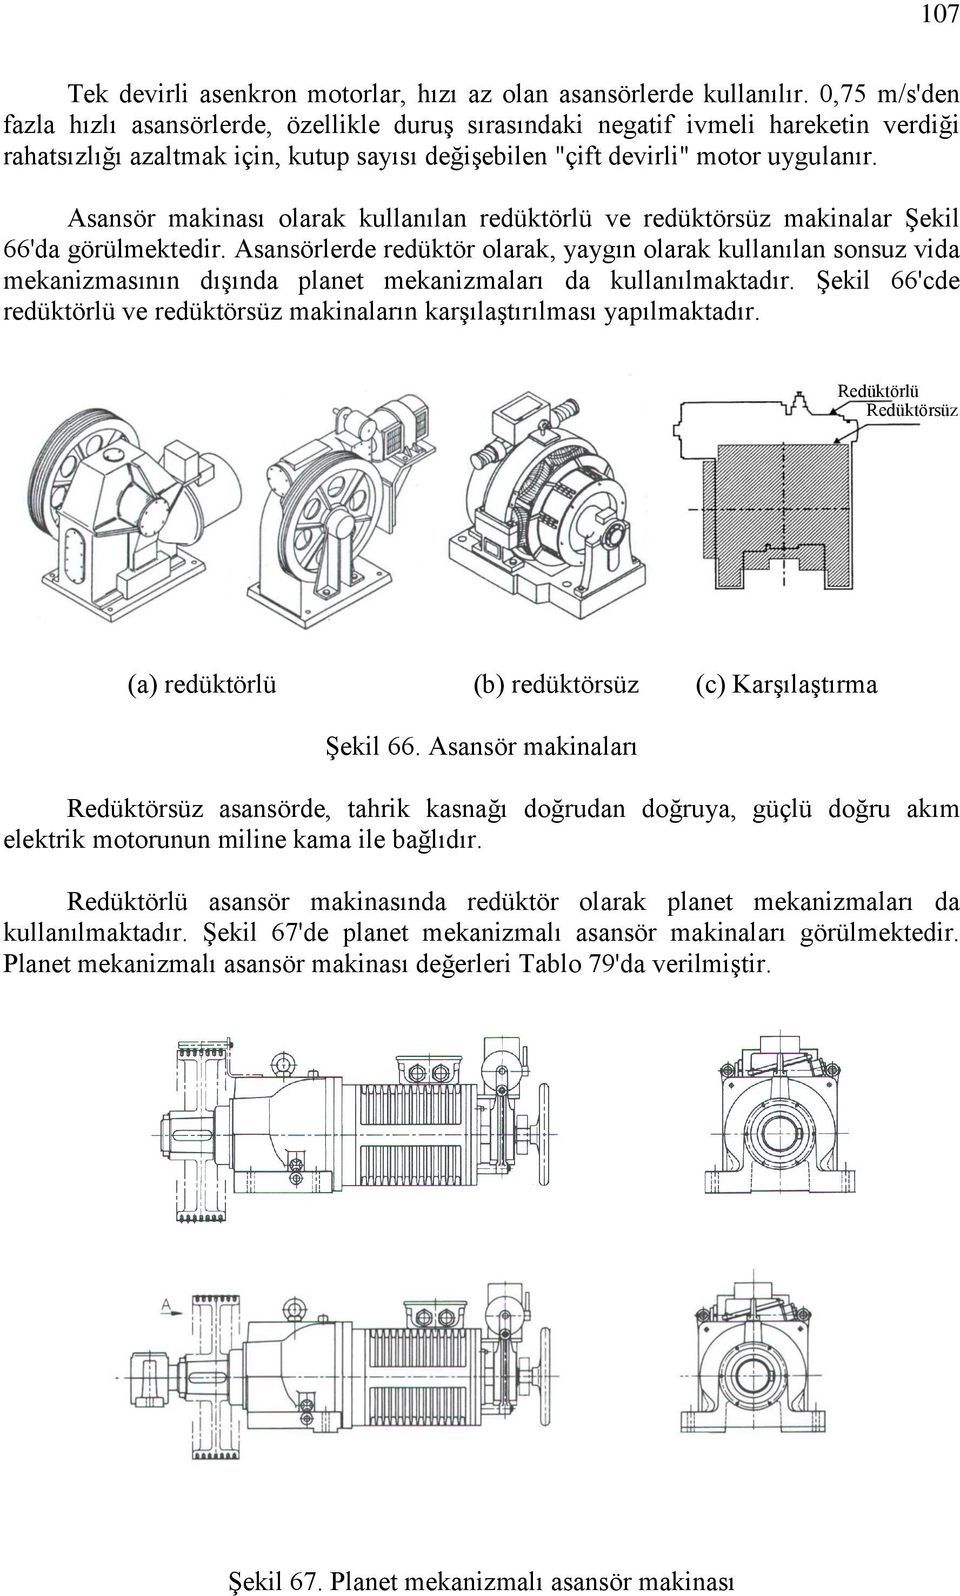 Asansör makinası olarak kullanılan redüktörlü ve redüktörsüz makinalar Şekil 66'da görülmektedir.